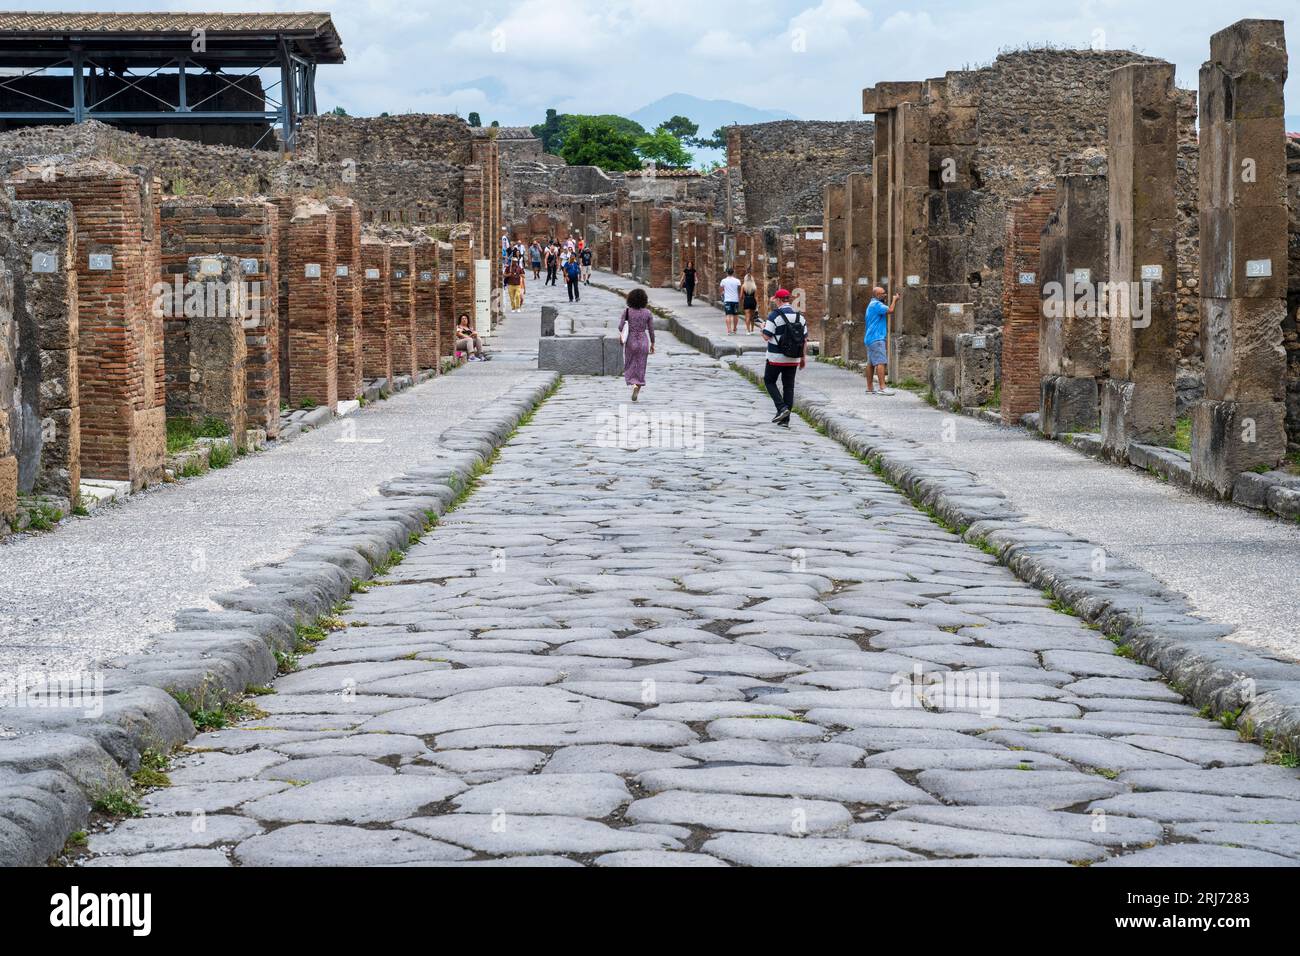 Vue vers l'est le long de la via dell' Abbondanza dans les ruines de l'ancienne ville de Pompéi dans la région Campanie du sud de l'Italie Banque D'Images